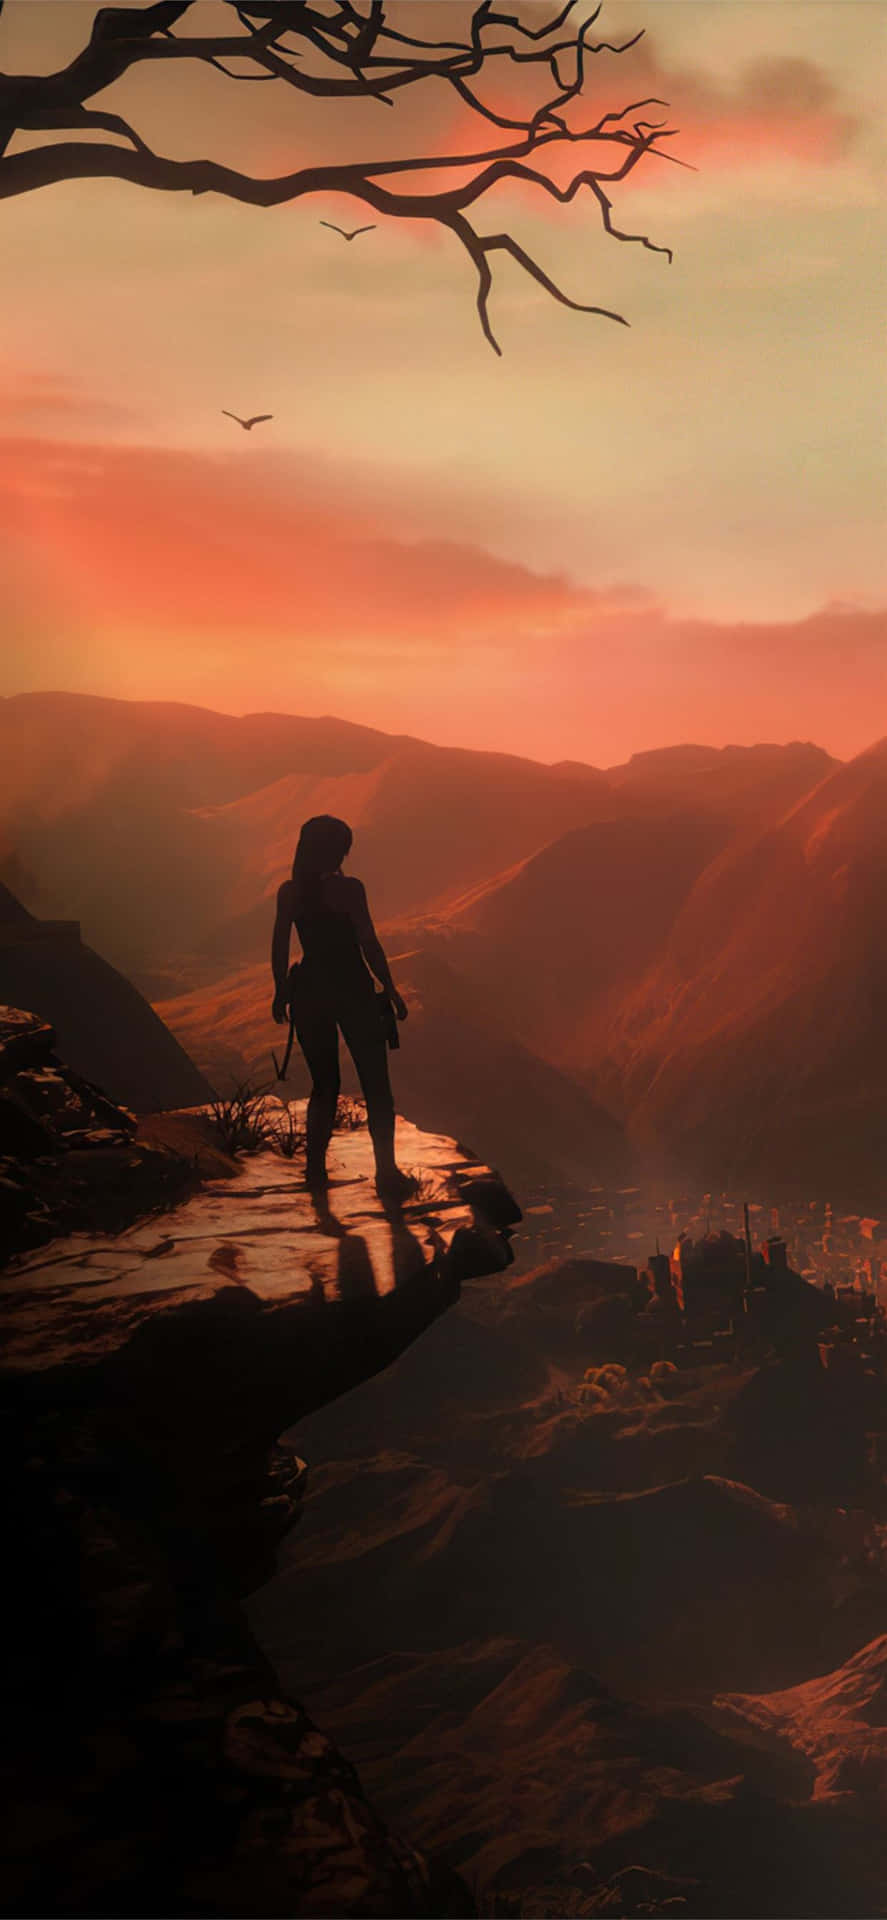 Klassisk Lara Croft vender tilbage til din hjemmeskærm med dette Tomb Raider-tryk til Iphone5s! Wallpaper